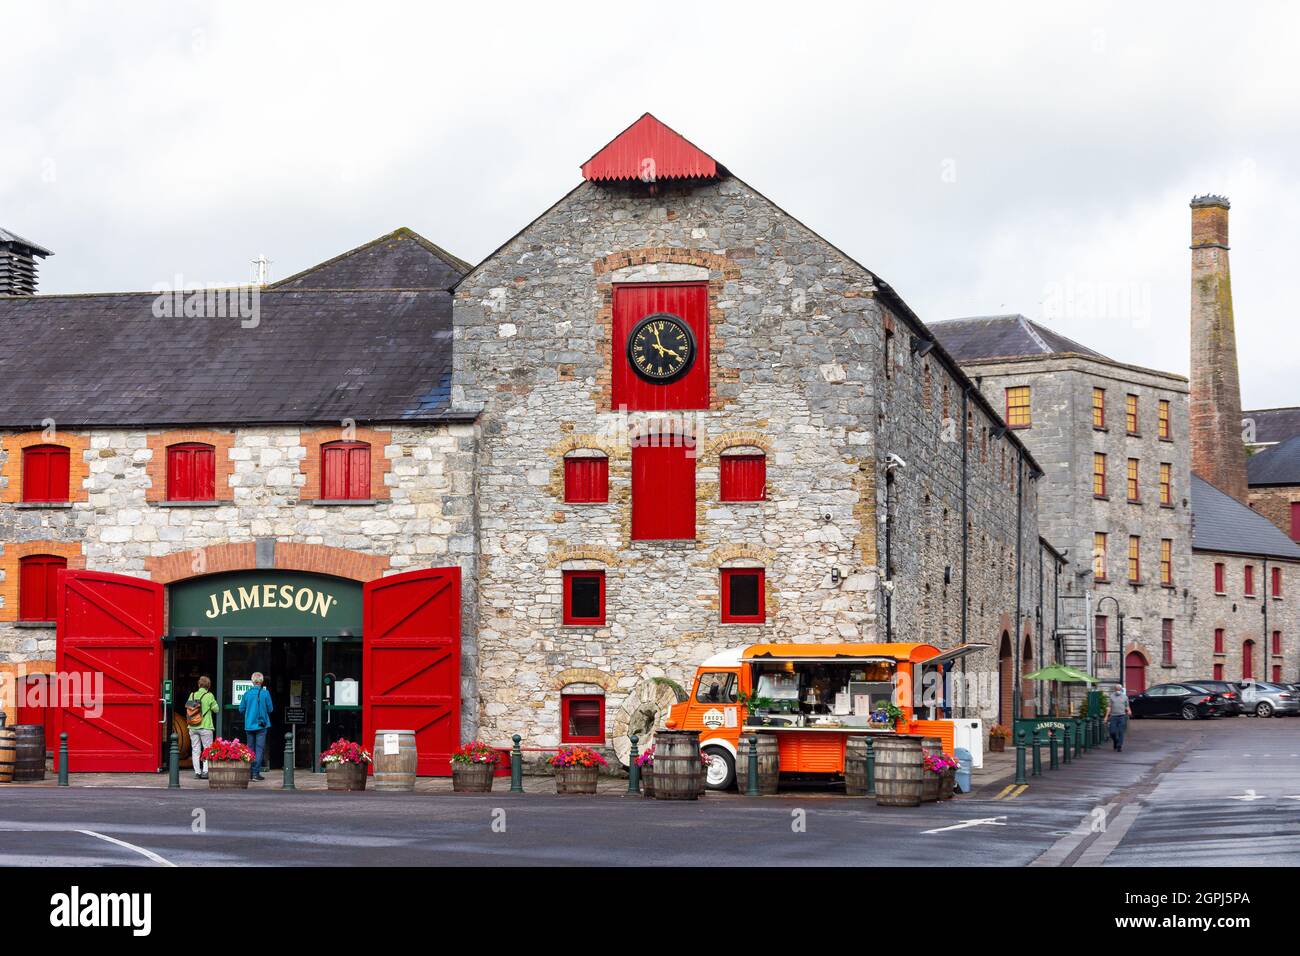 Eintritt zur Old Jameson Whiskey Distillery Midleton, Distilley Walk, Midleton (Mainistir na Corann), County Cork, Republik Irland Stockfoto